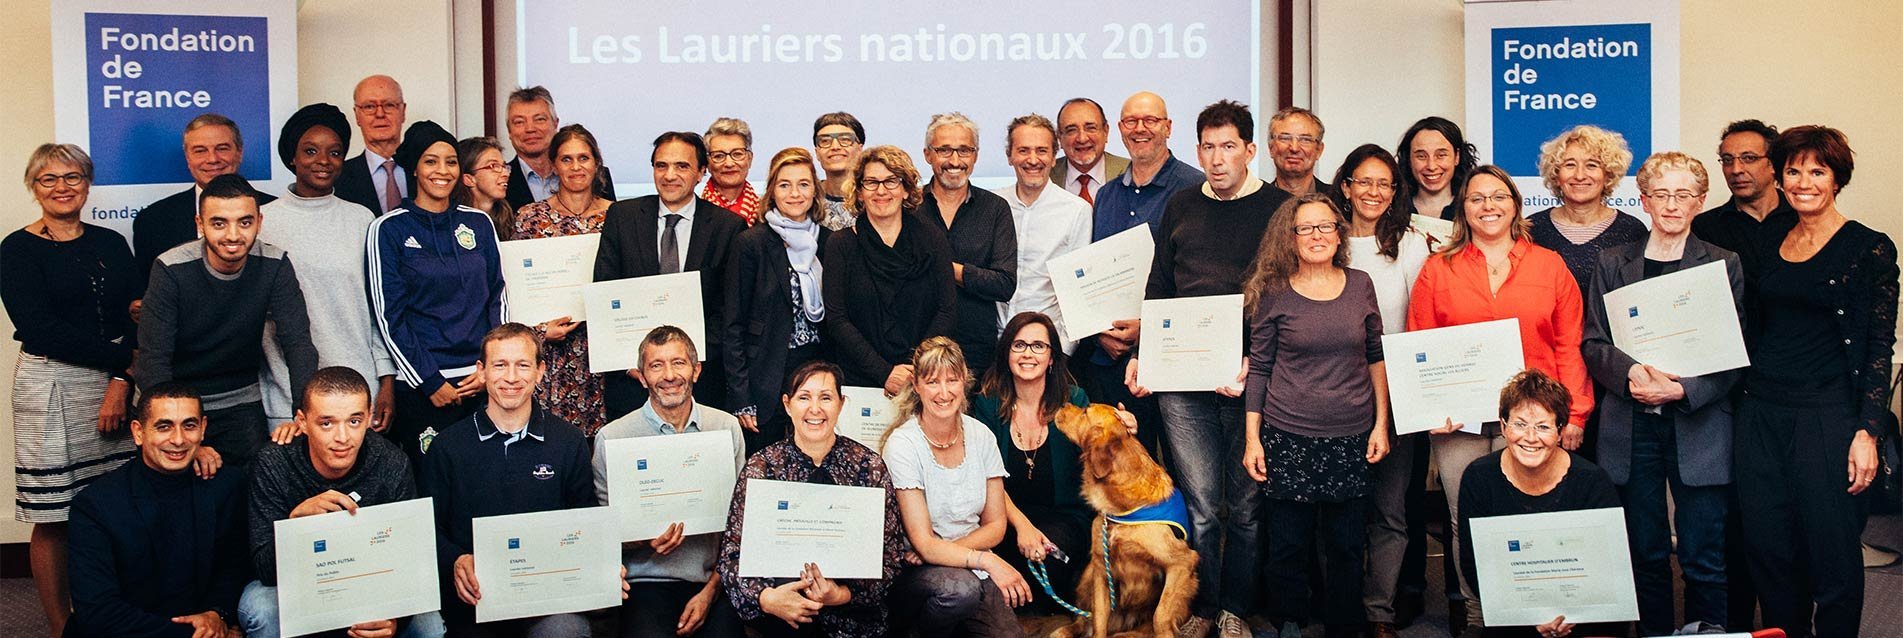 Lauriers 2016 : la Fondation de France remet ses prix